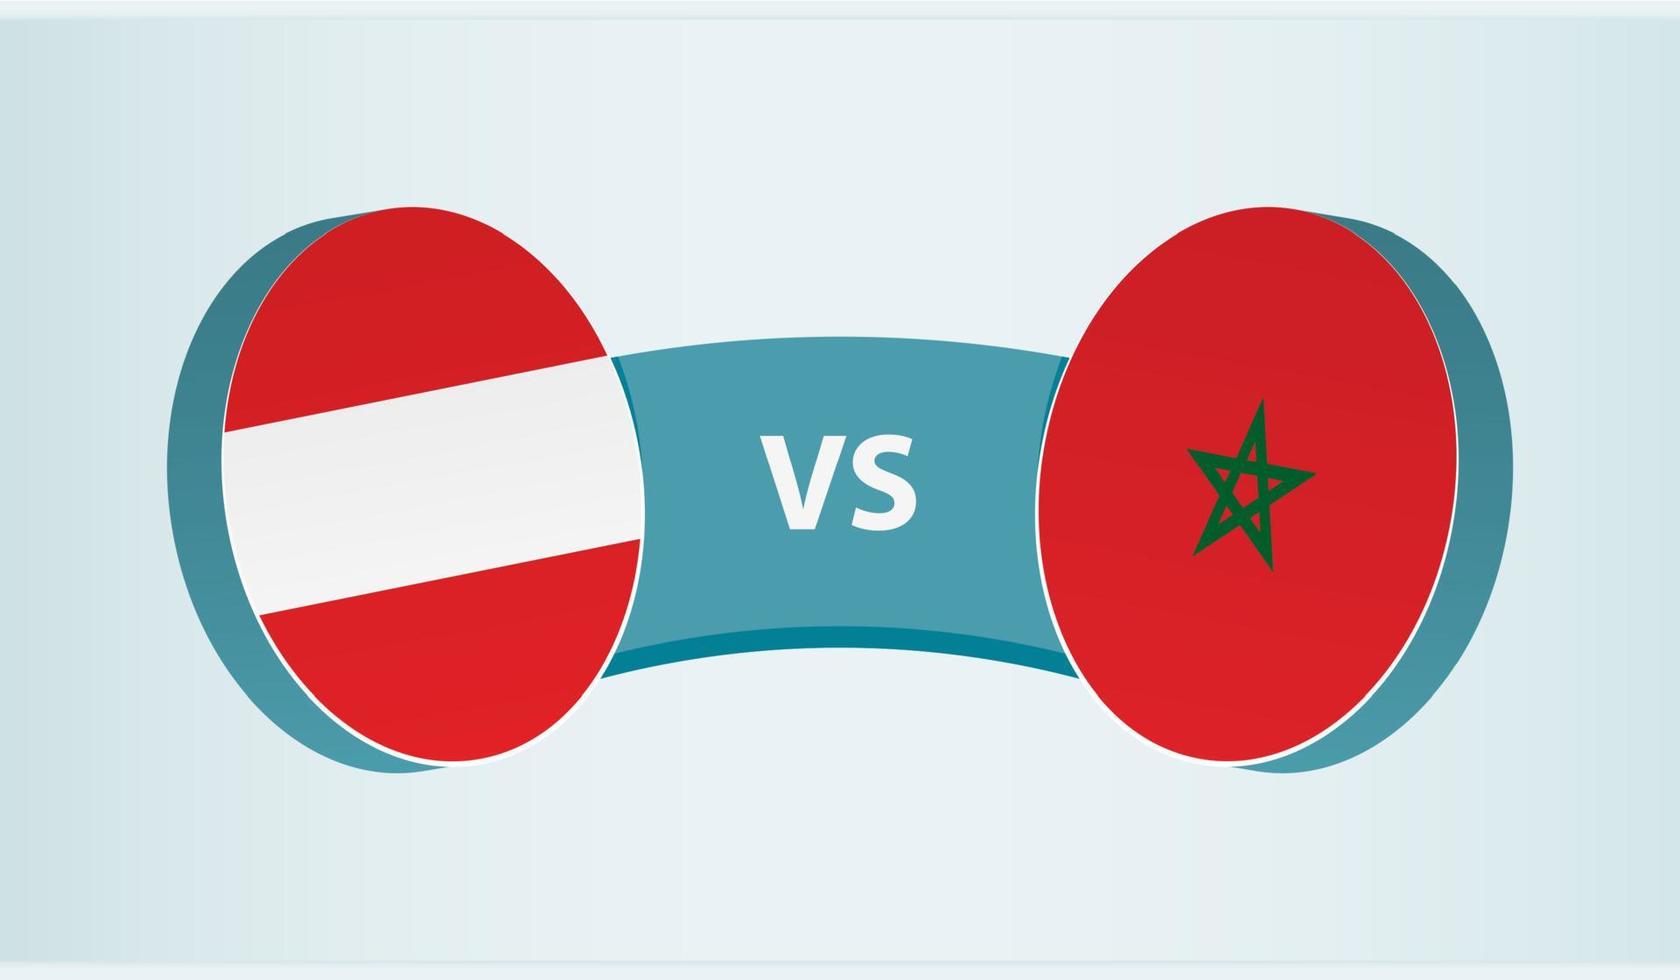 österrike mot marocko, team sporter konkurrens begrepp. vektor